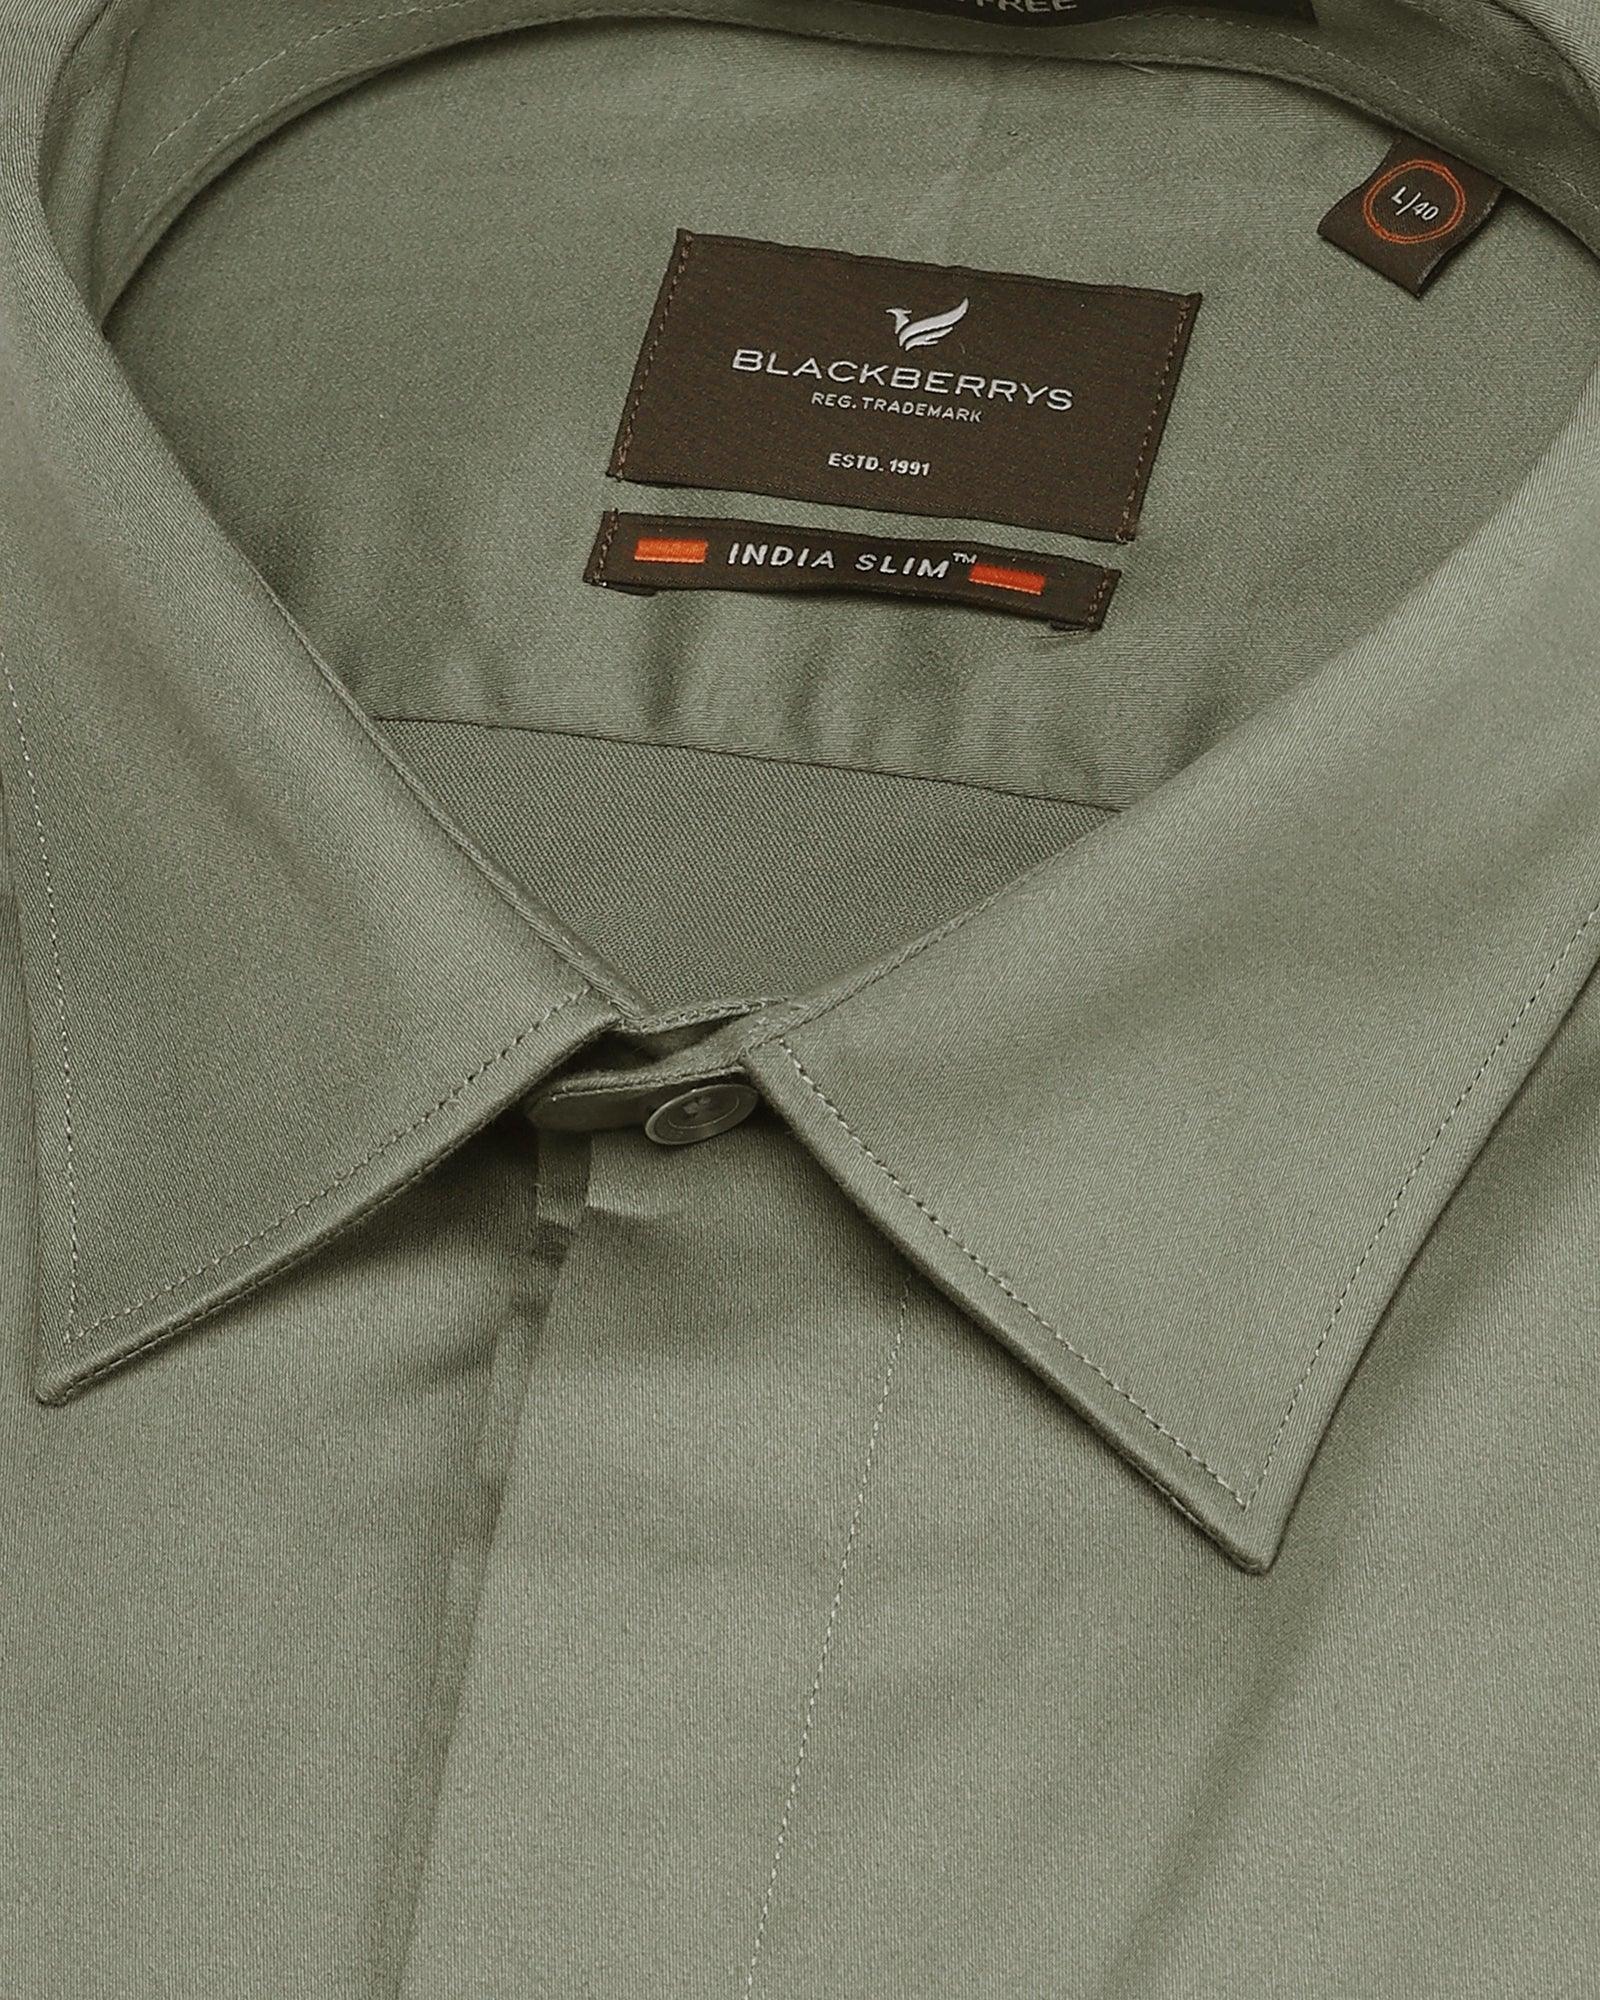 Formal Olive Solid Shirt - Kylor